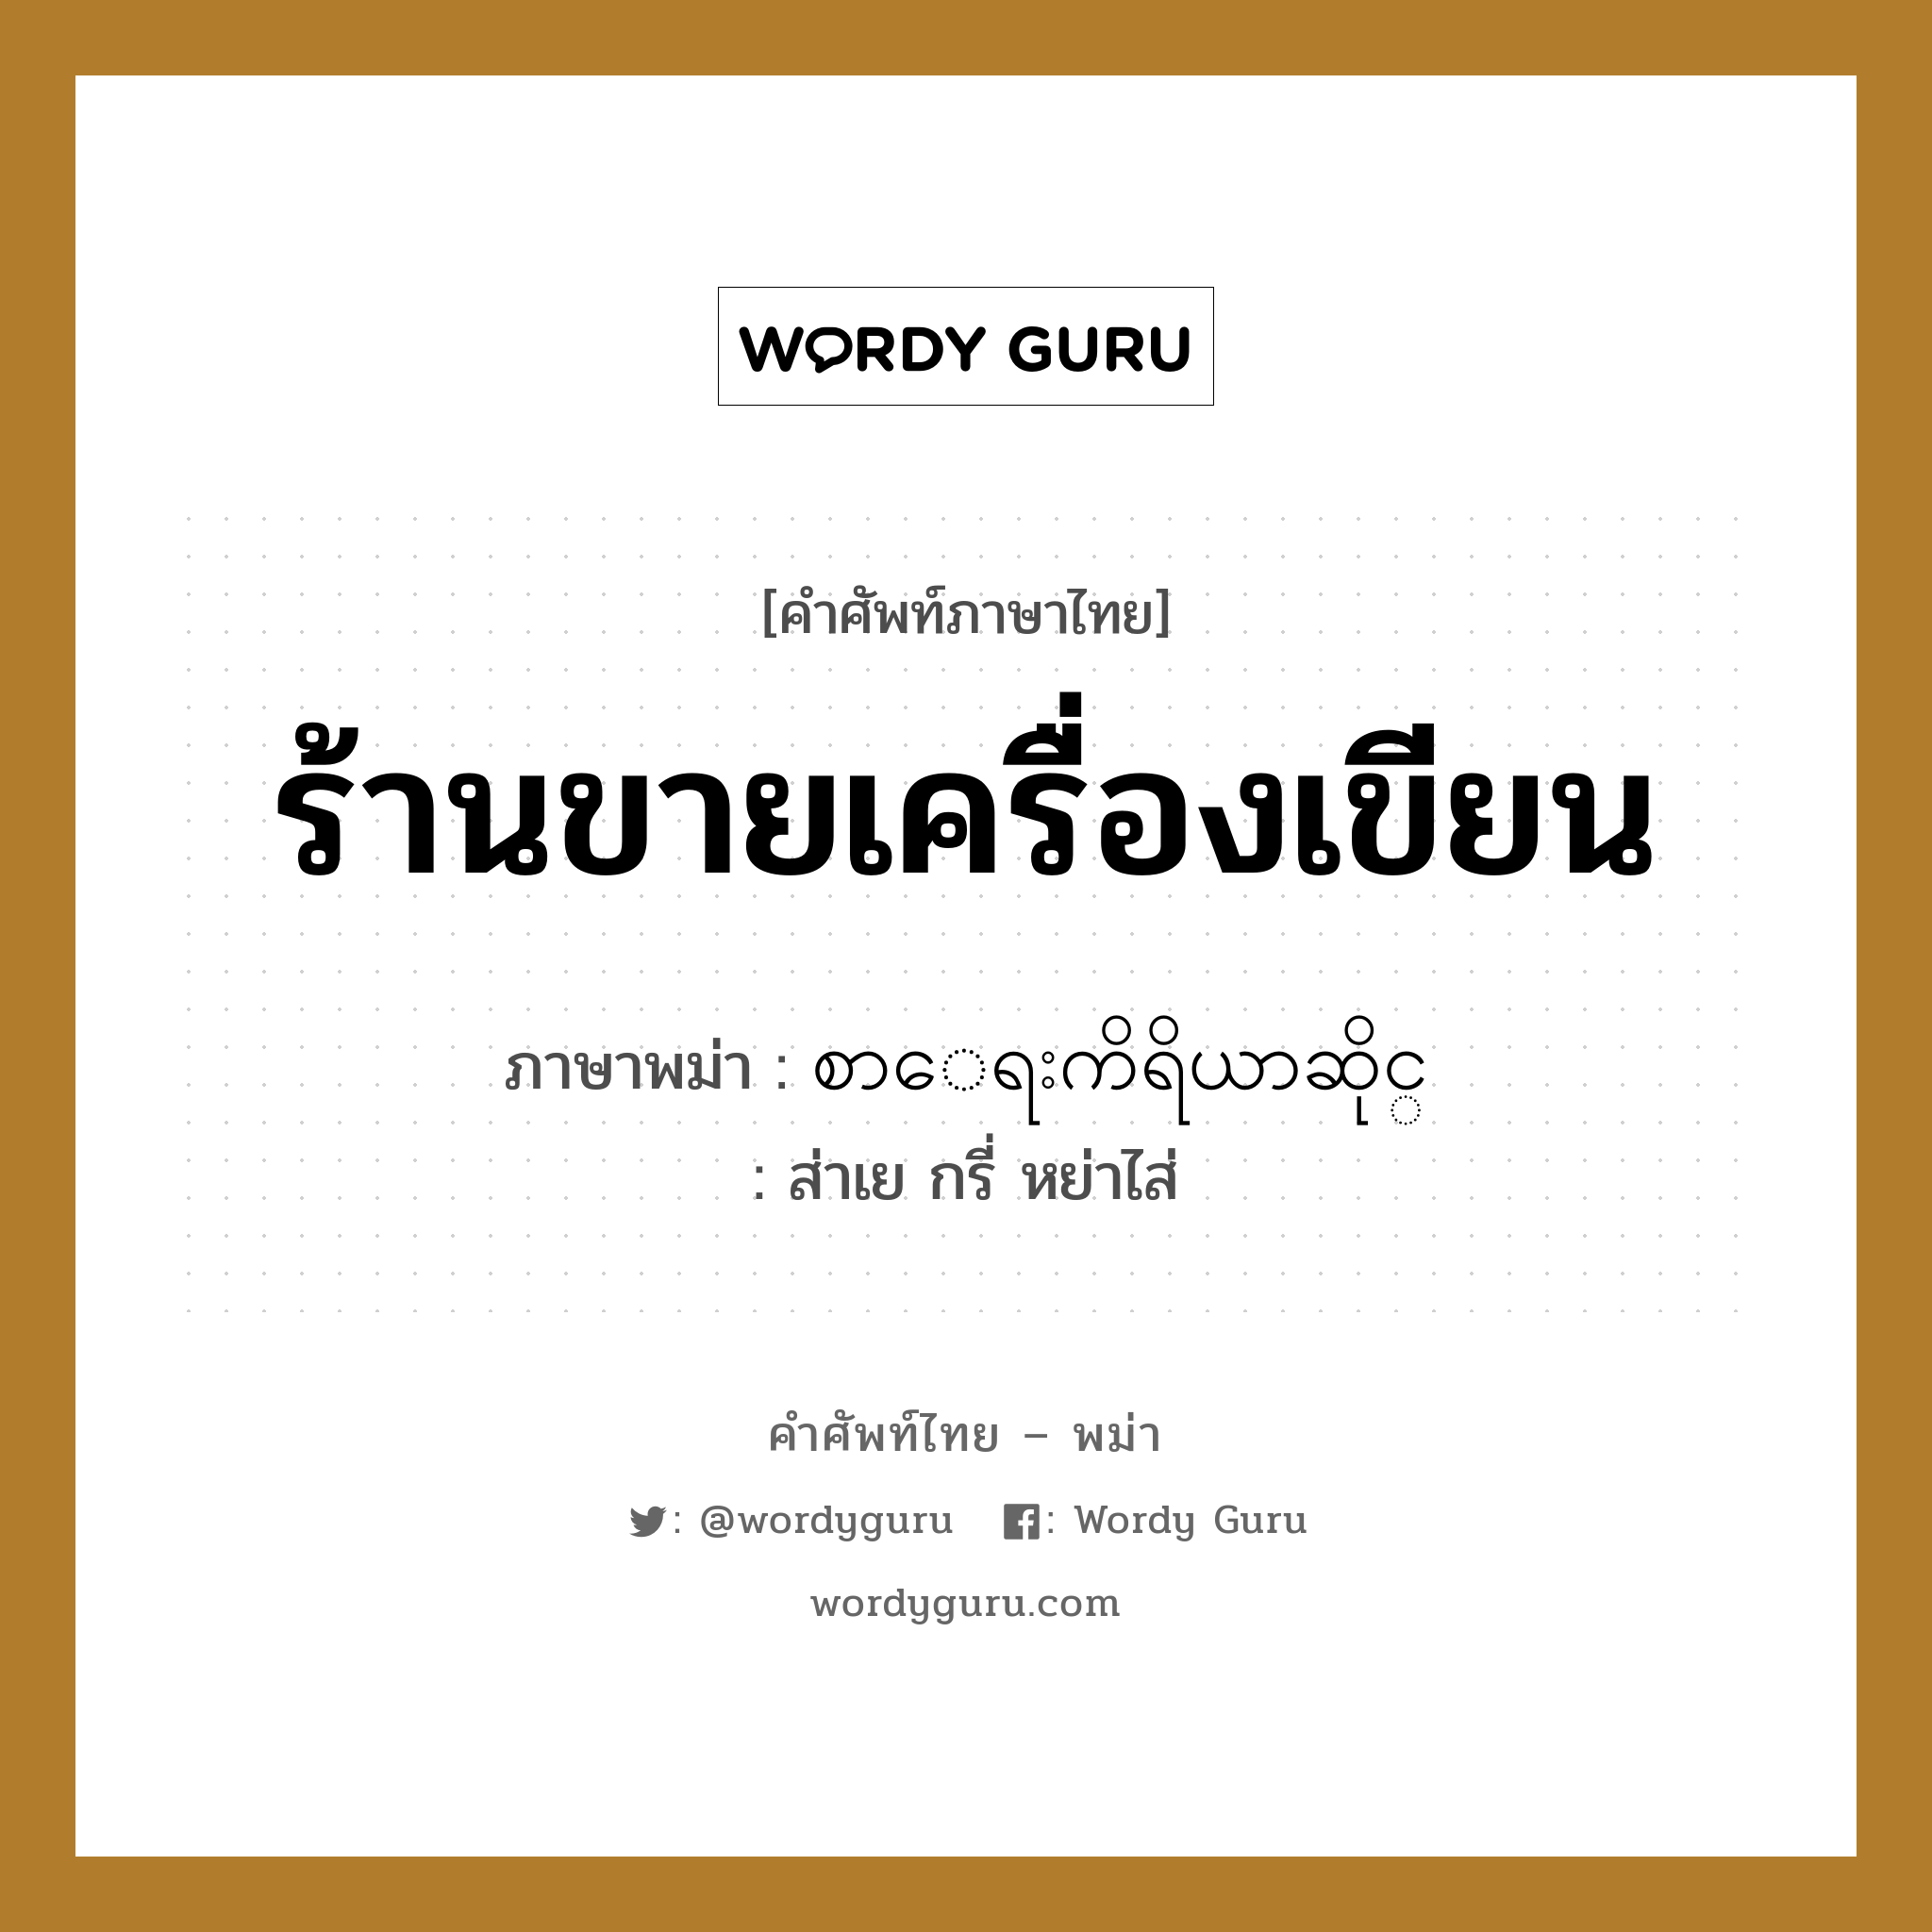 စာေရးကိရိယာဆိုင္ ภาษาไทย?, คำศัพท์ภาษาไทย - พม่า စာေရးကိရိယာဆိုင္ ภาษาพม่า ร้านขายเครื่องเขียน หมวด หมวดร้านค้าทั่วไป ส่าเย กรี่ หย่าไส่ หมวด หมวดร้านค้าทั่วไป